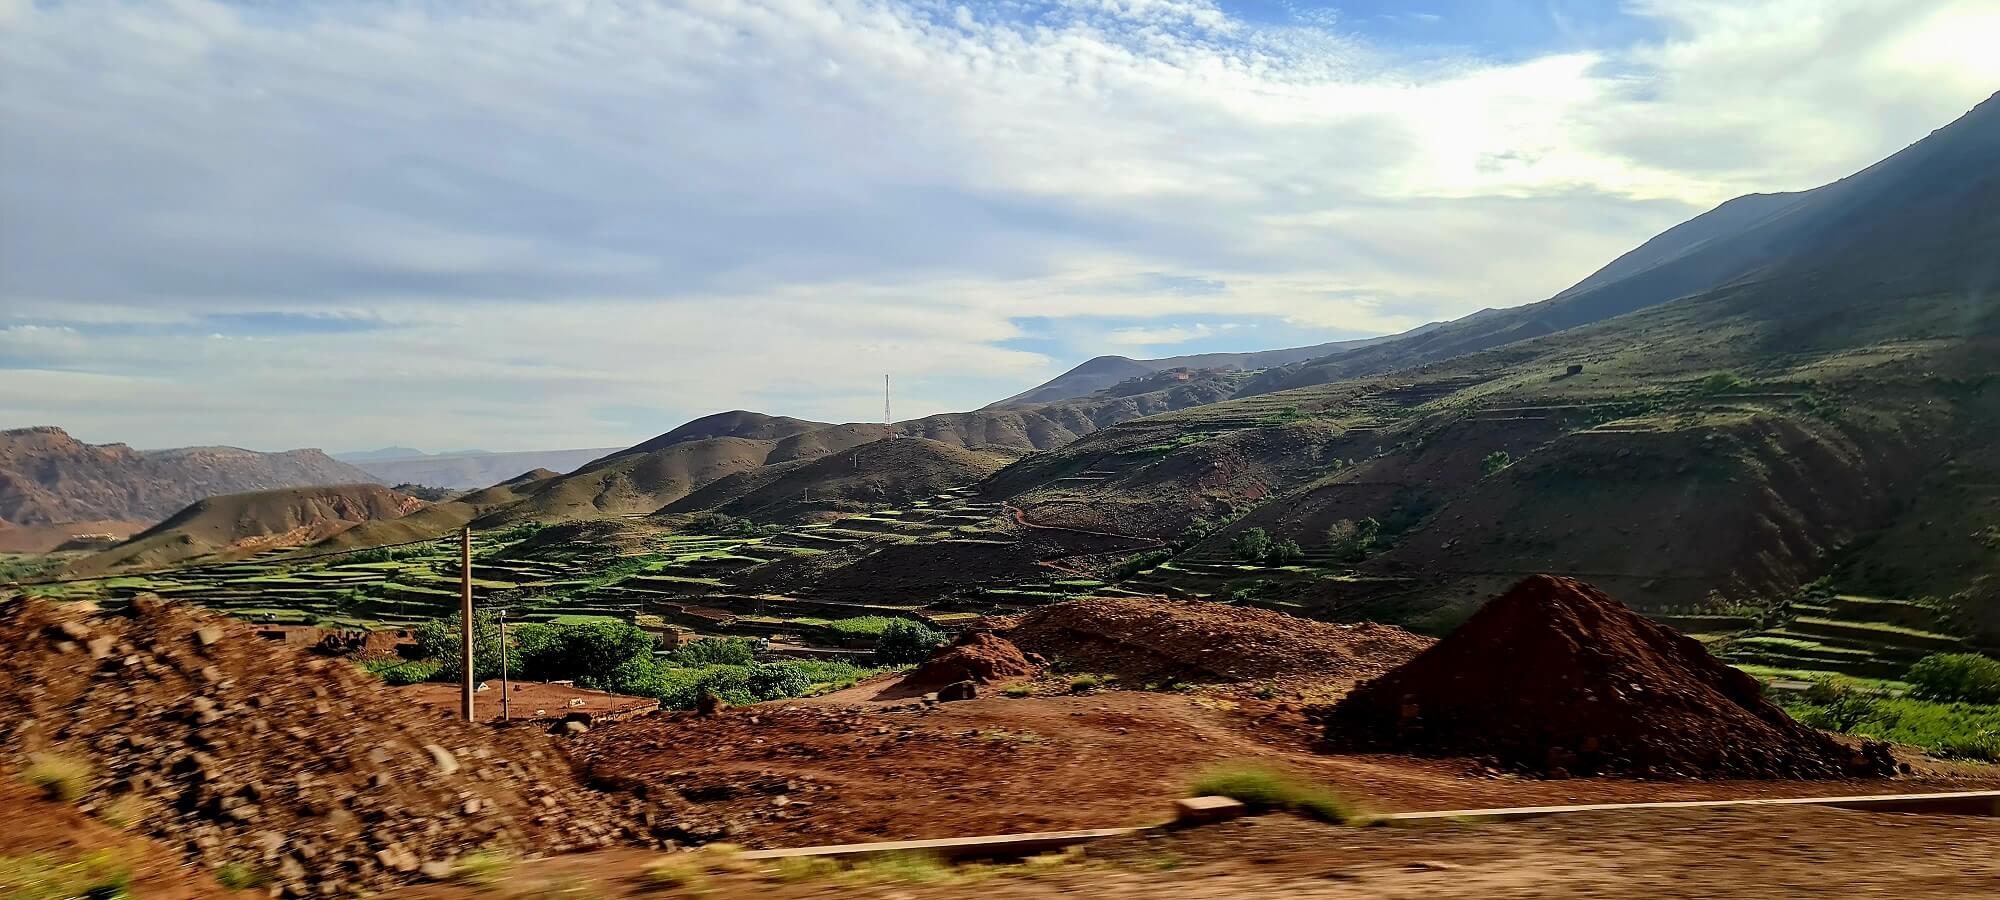 Von Marrakech in die Wüste: Atlasgebirge